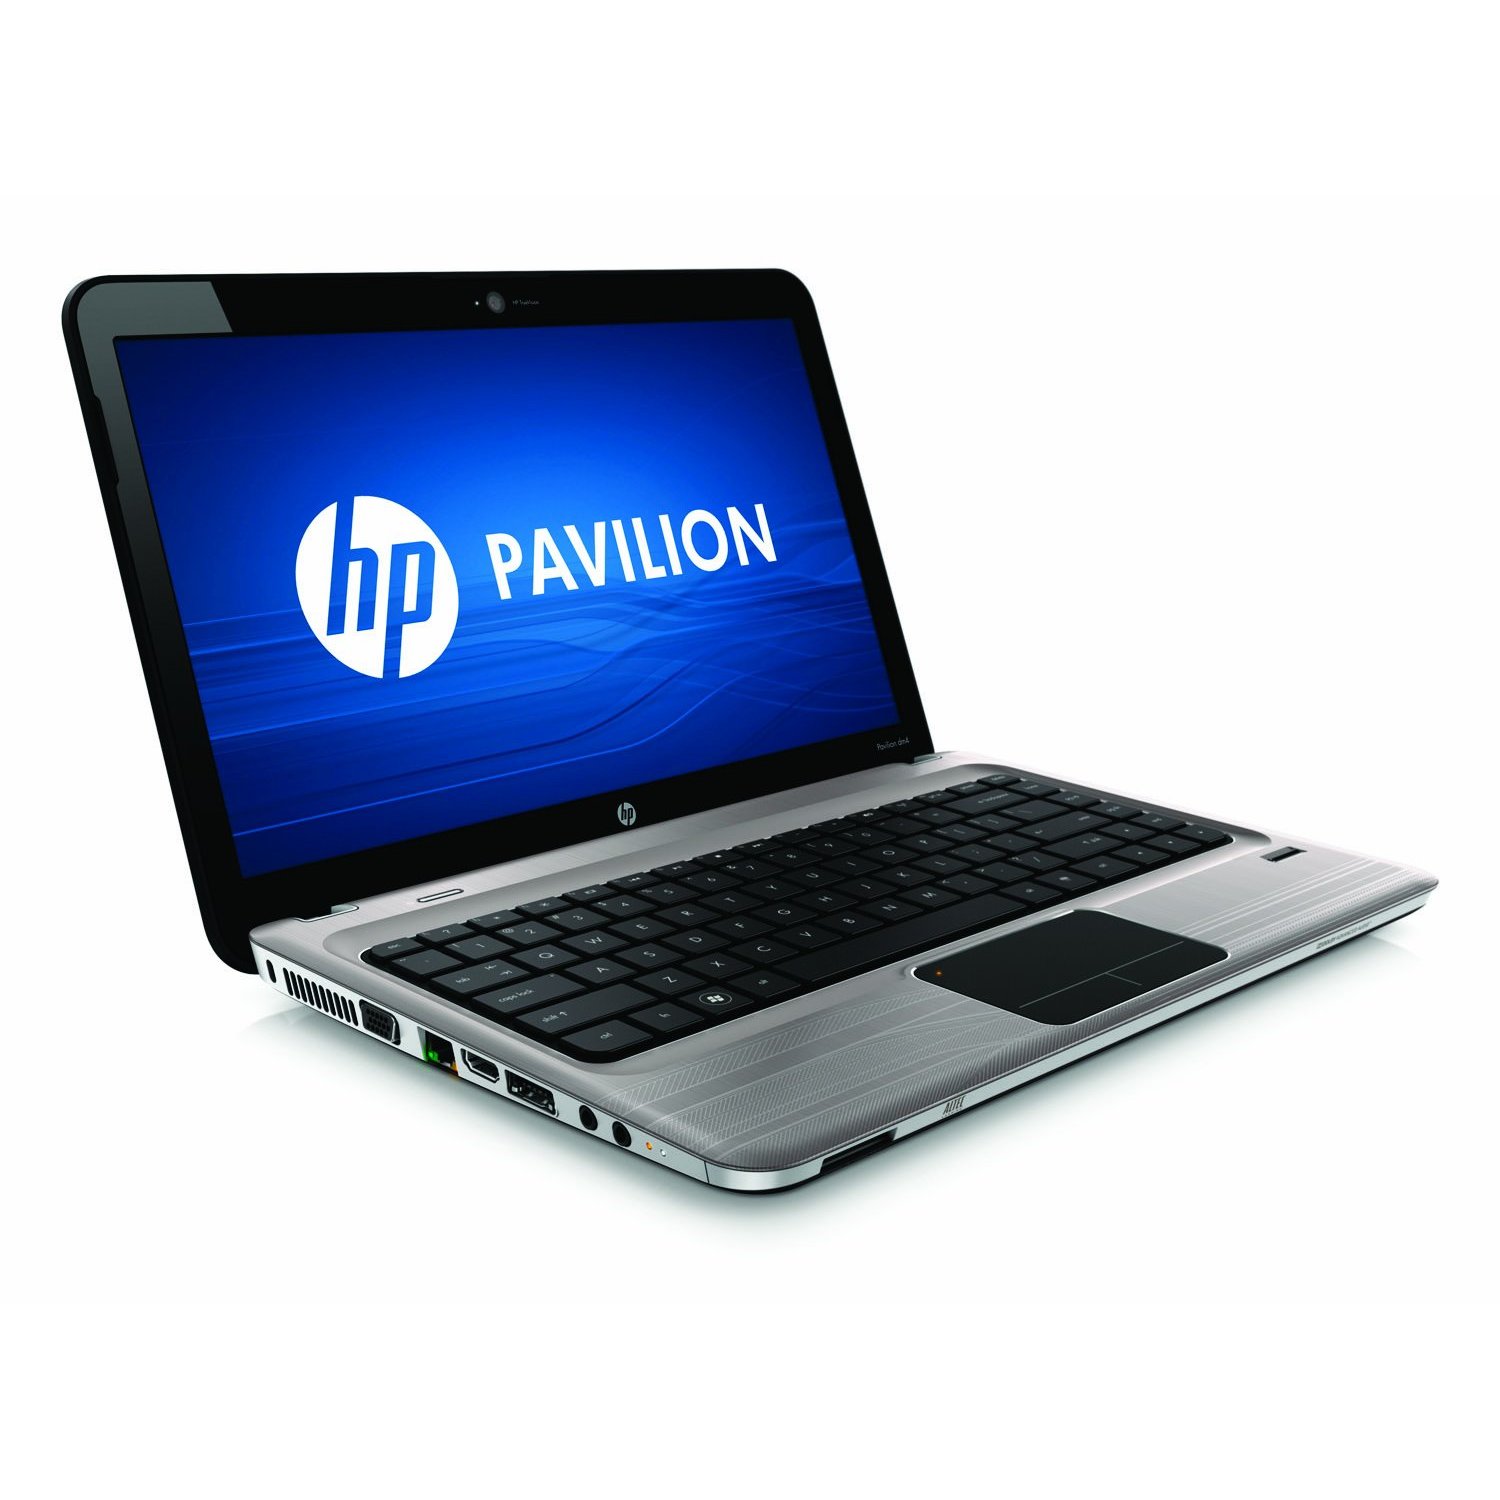 HP Pavilion dm4-2033cl